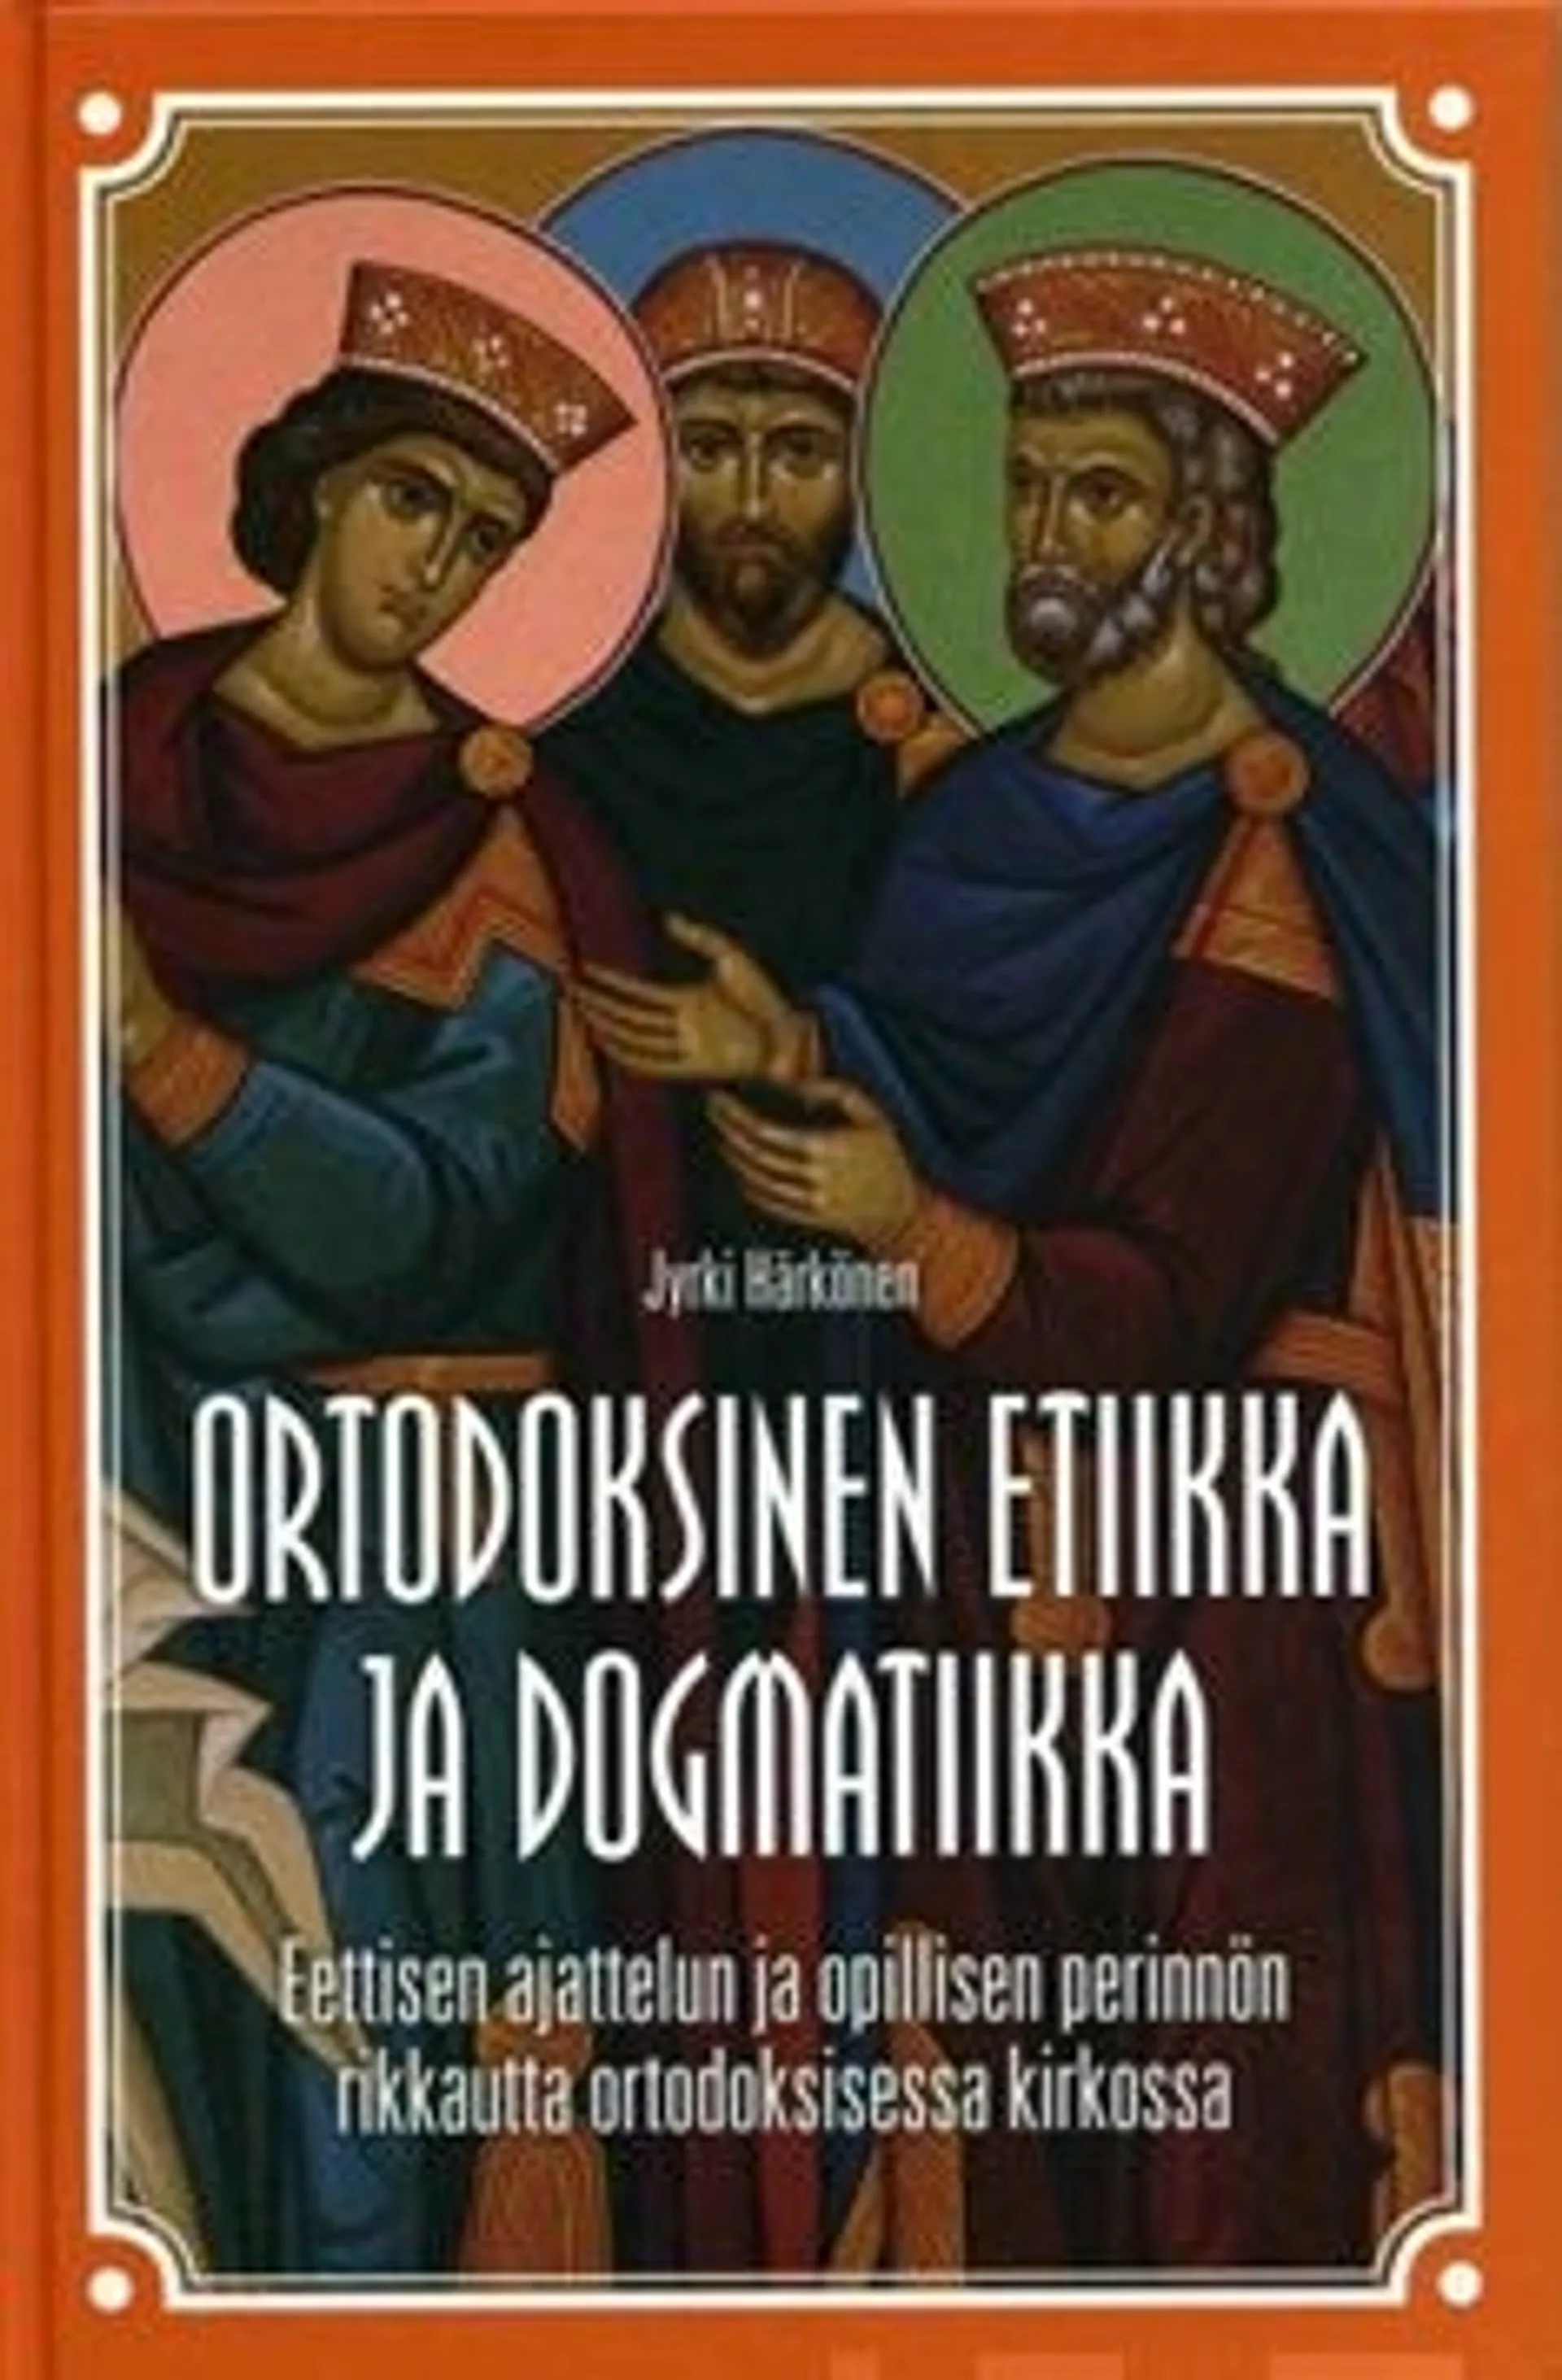 Härkönen, Ortodoksinen etiikka ja dogmatiikka - eettisen ajattelun ja opillisen perinnön rikkautta ortodoksisessa kirkossa